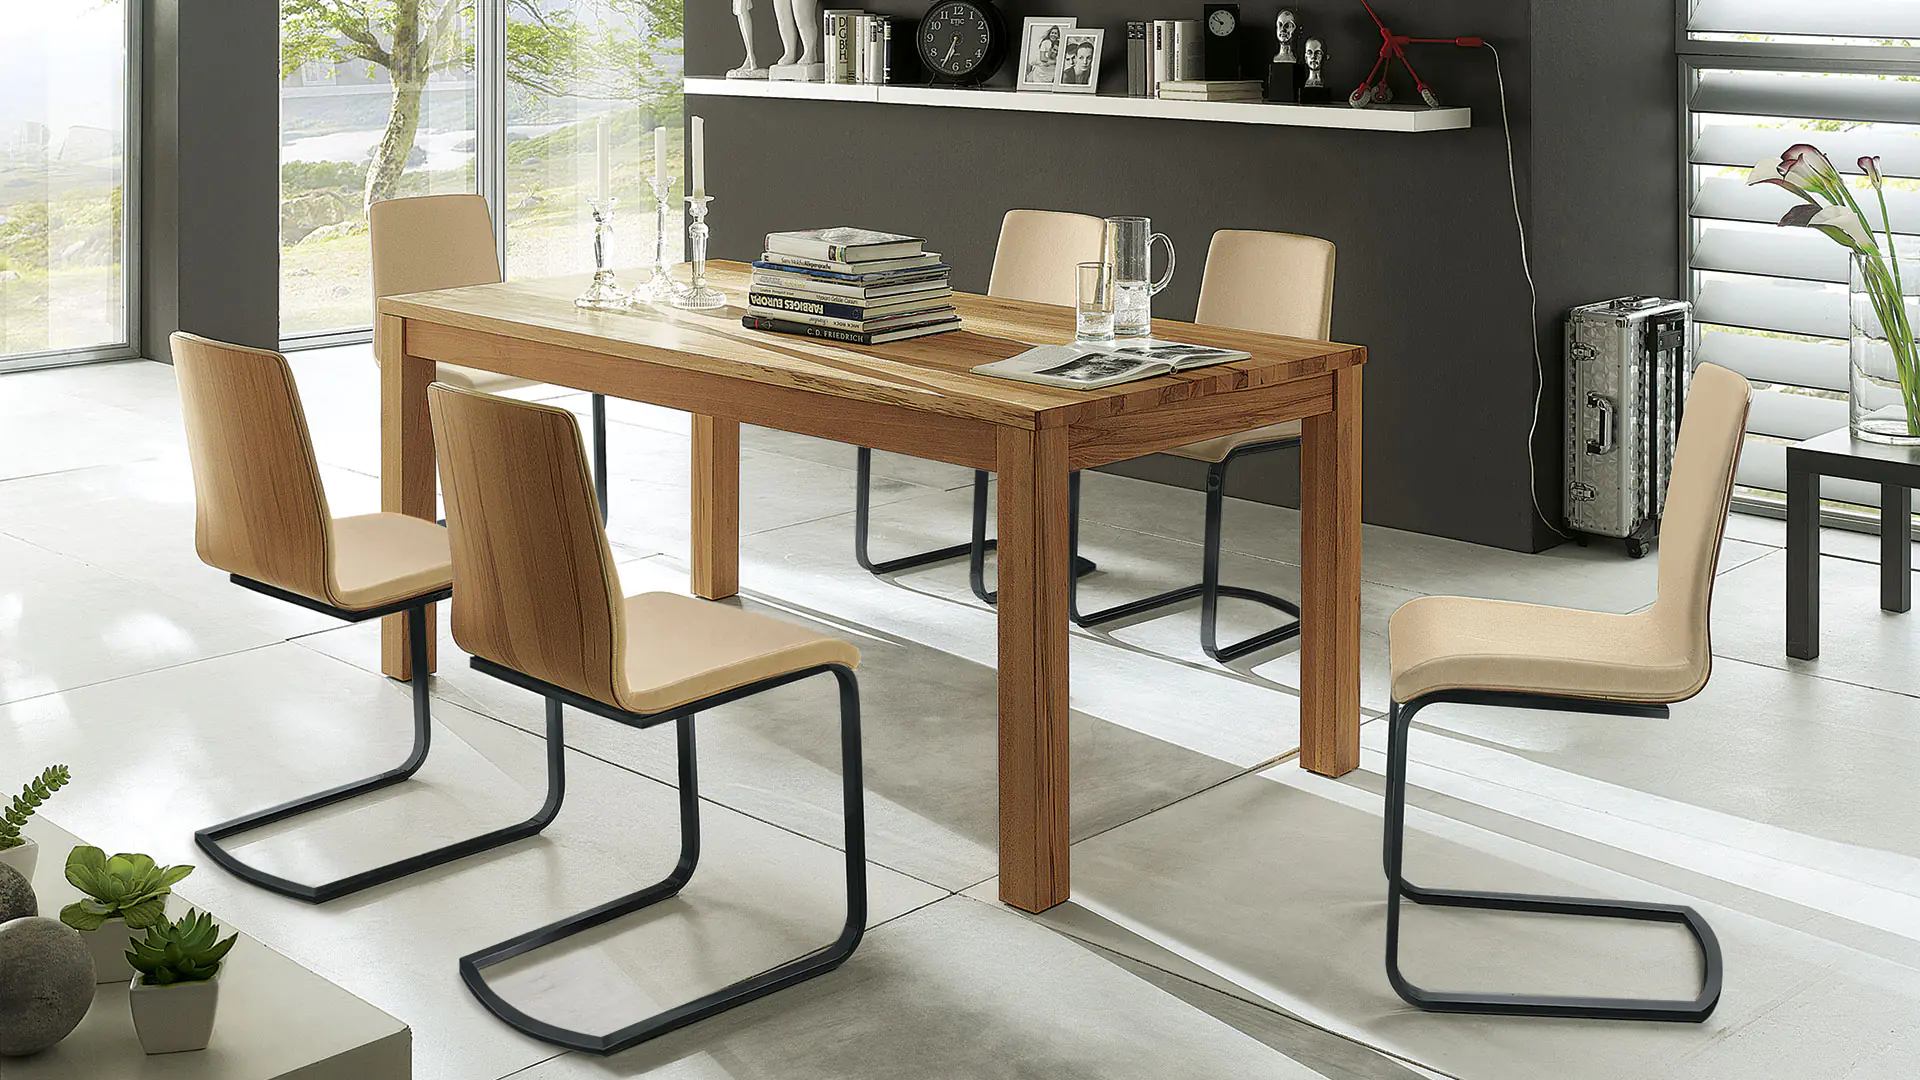 Classico - Une table de salle à manger intemporelle et confortable